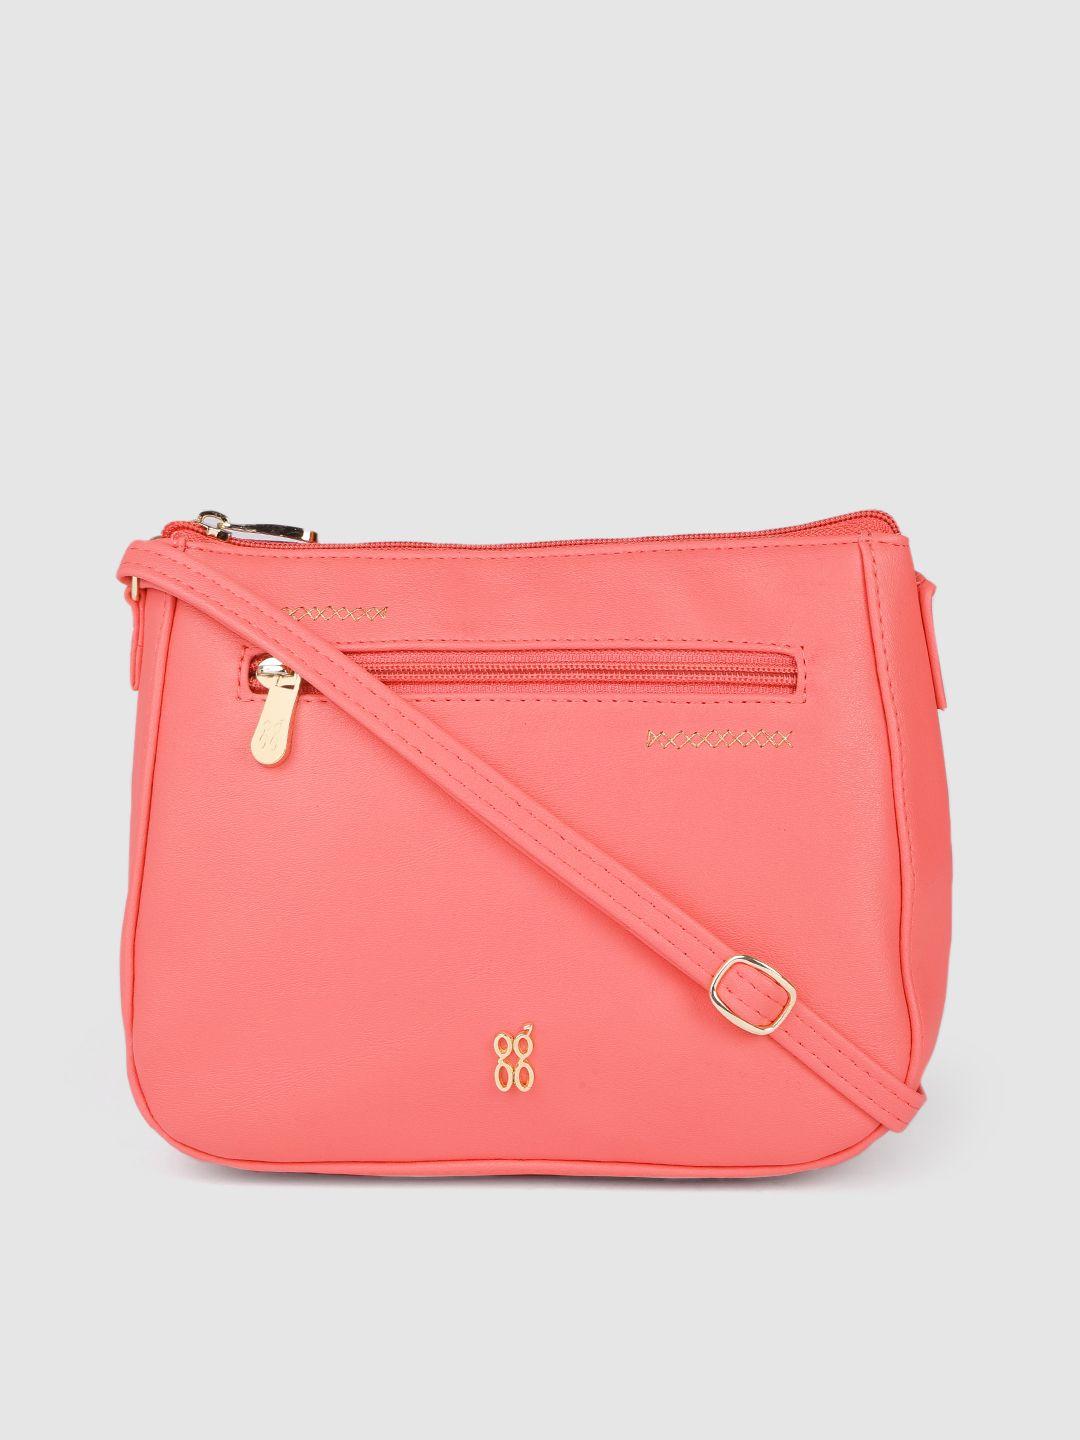 baggit coral pink structured sling bag